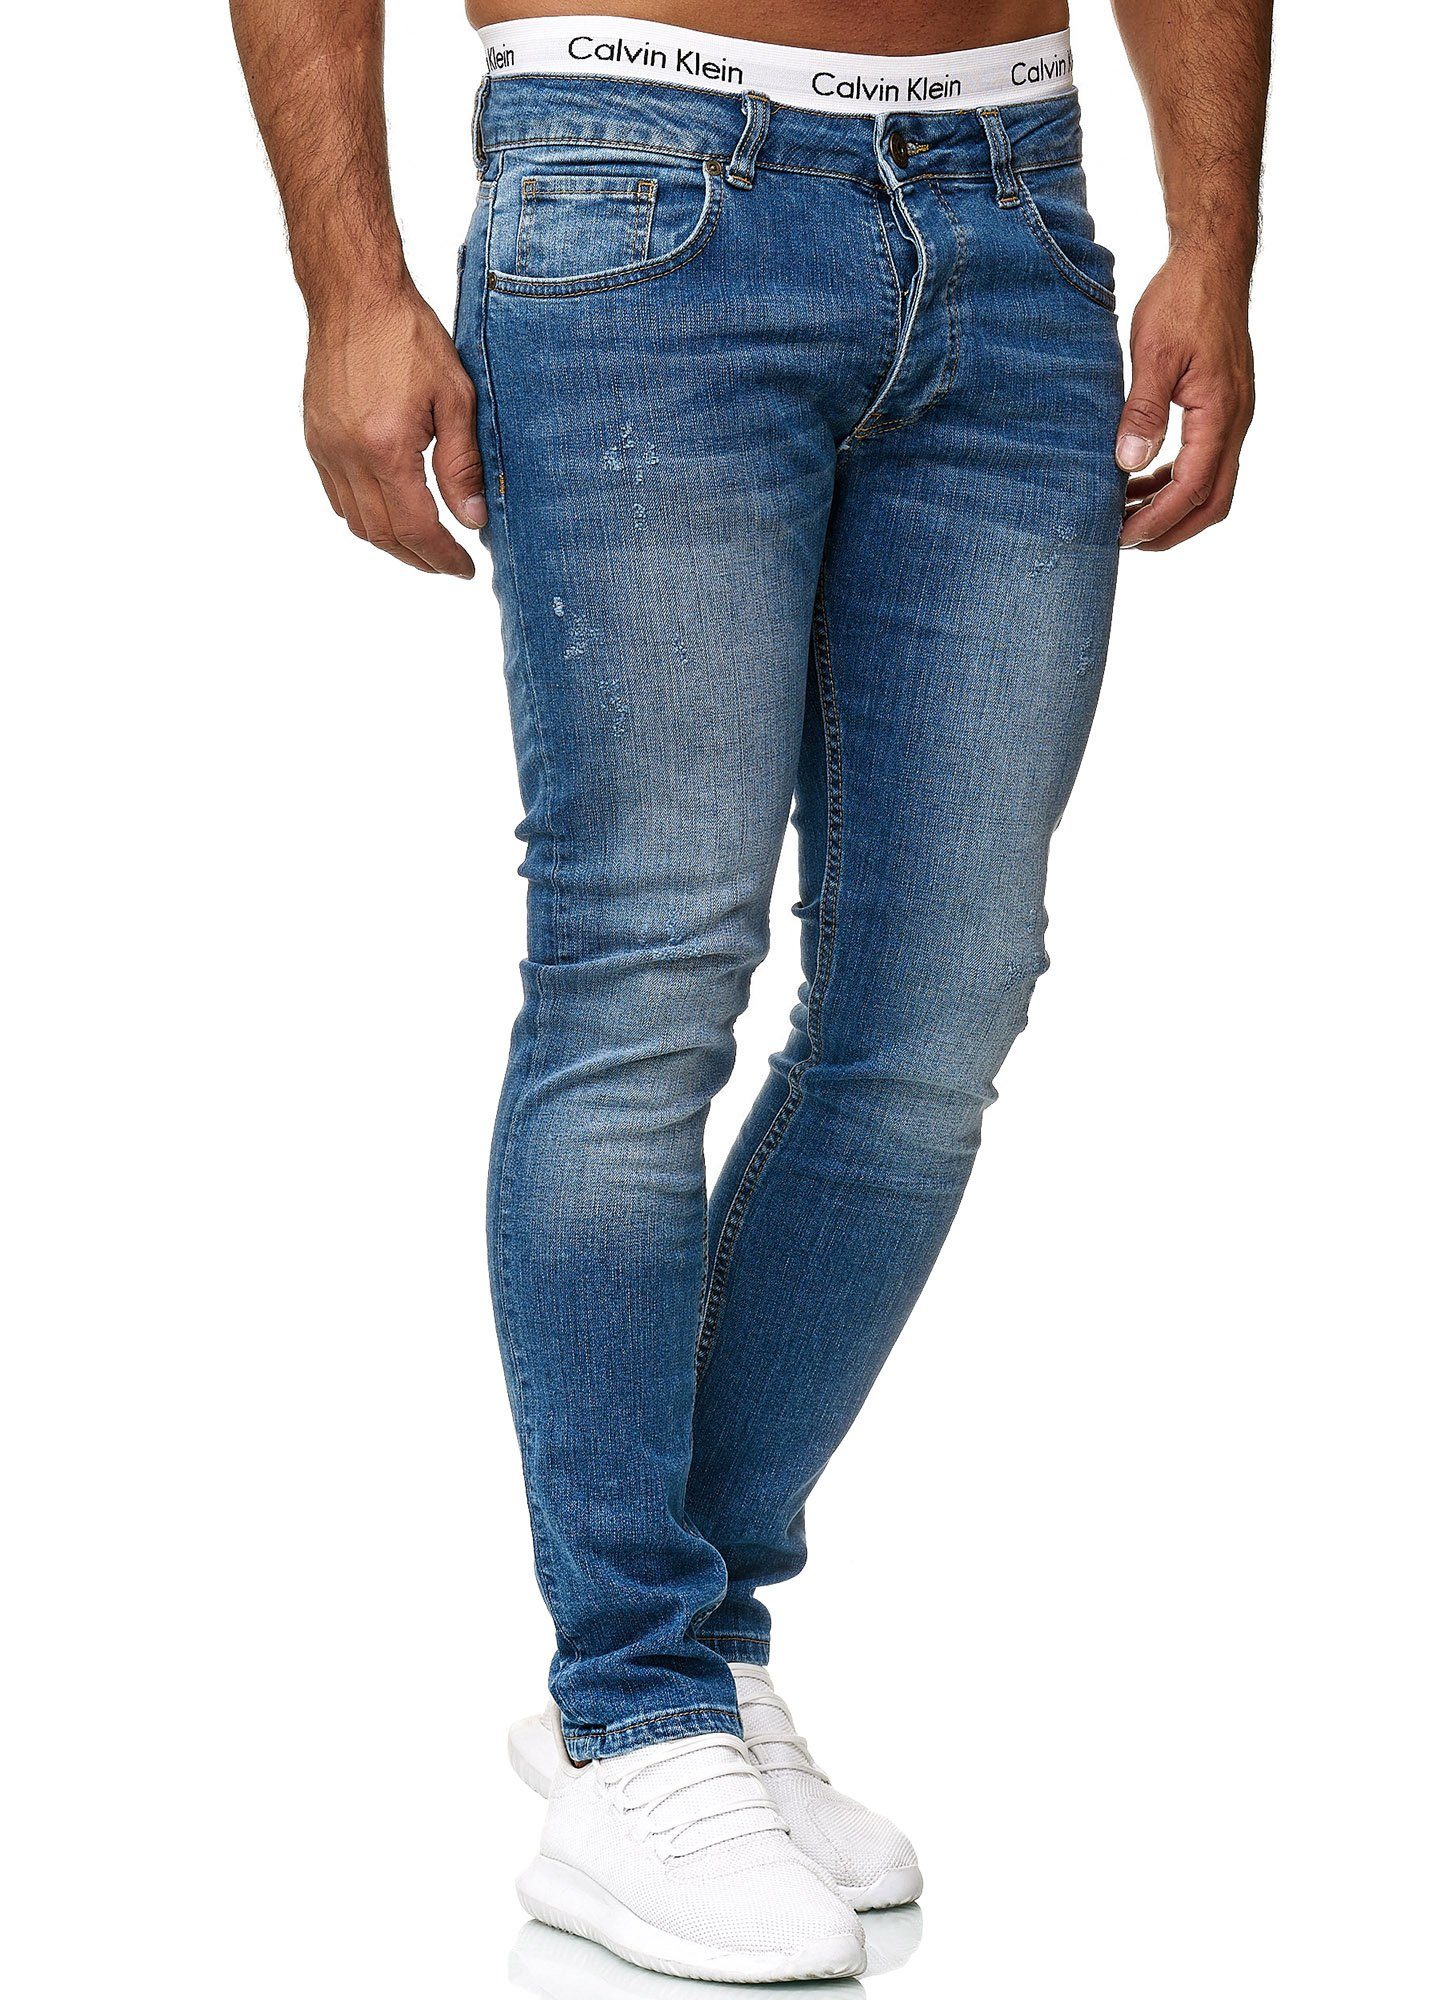 Geschenke von ausgewählten Geschäften und Marken Code47 Skinny-fit-Jeans Code47 Skinny Regular Basic Blue Jeanshose Jeans Fit Used Designer 601 Old Hose Herren